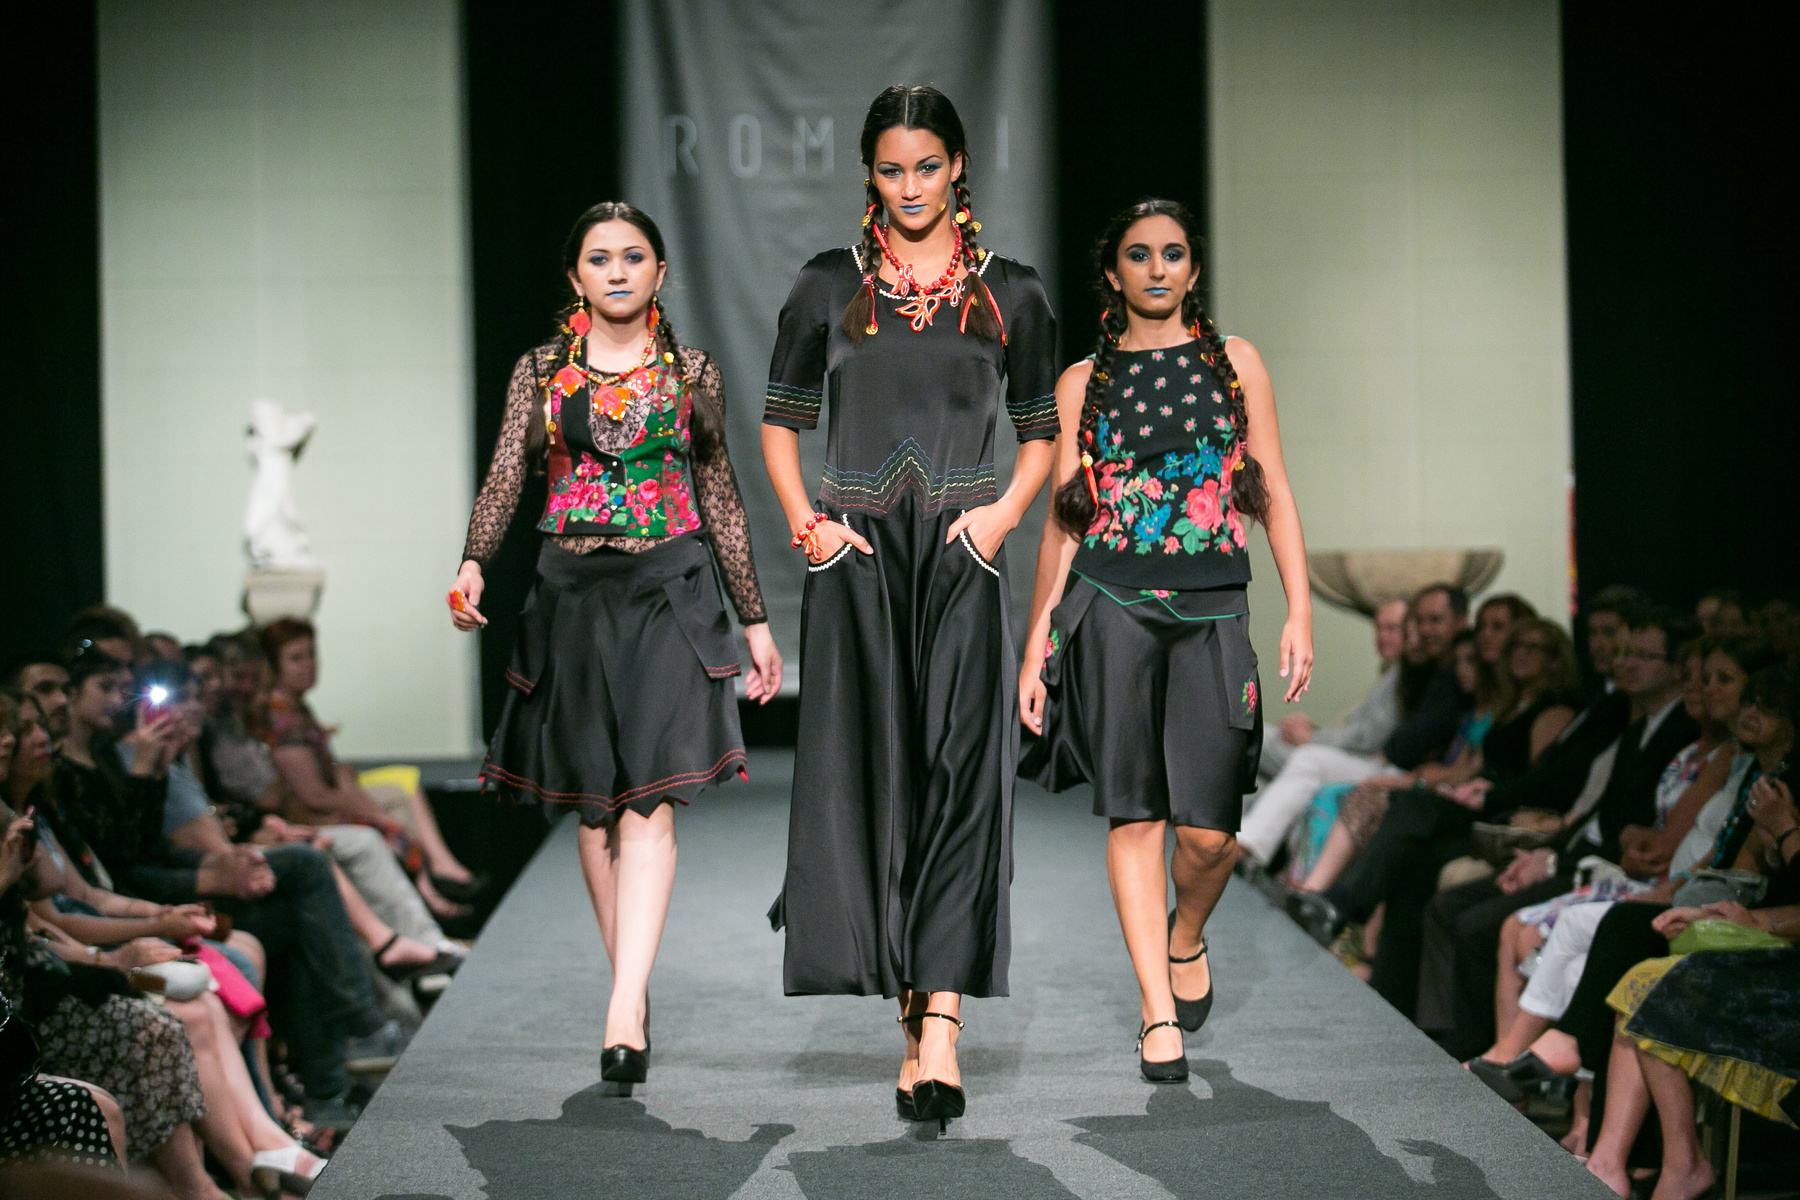 Középen a ruhákat tervező Varga Erika, mellette kétoldalt Diós Gabriella és Varga Helena, hátérben a modellek.